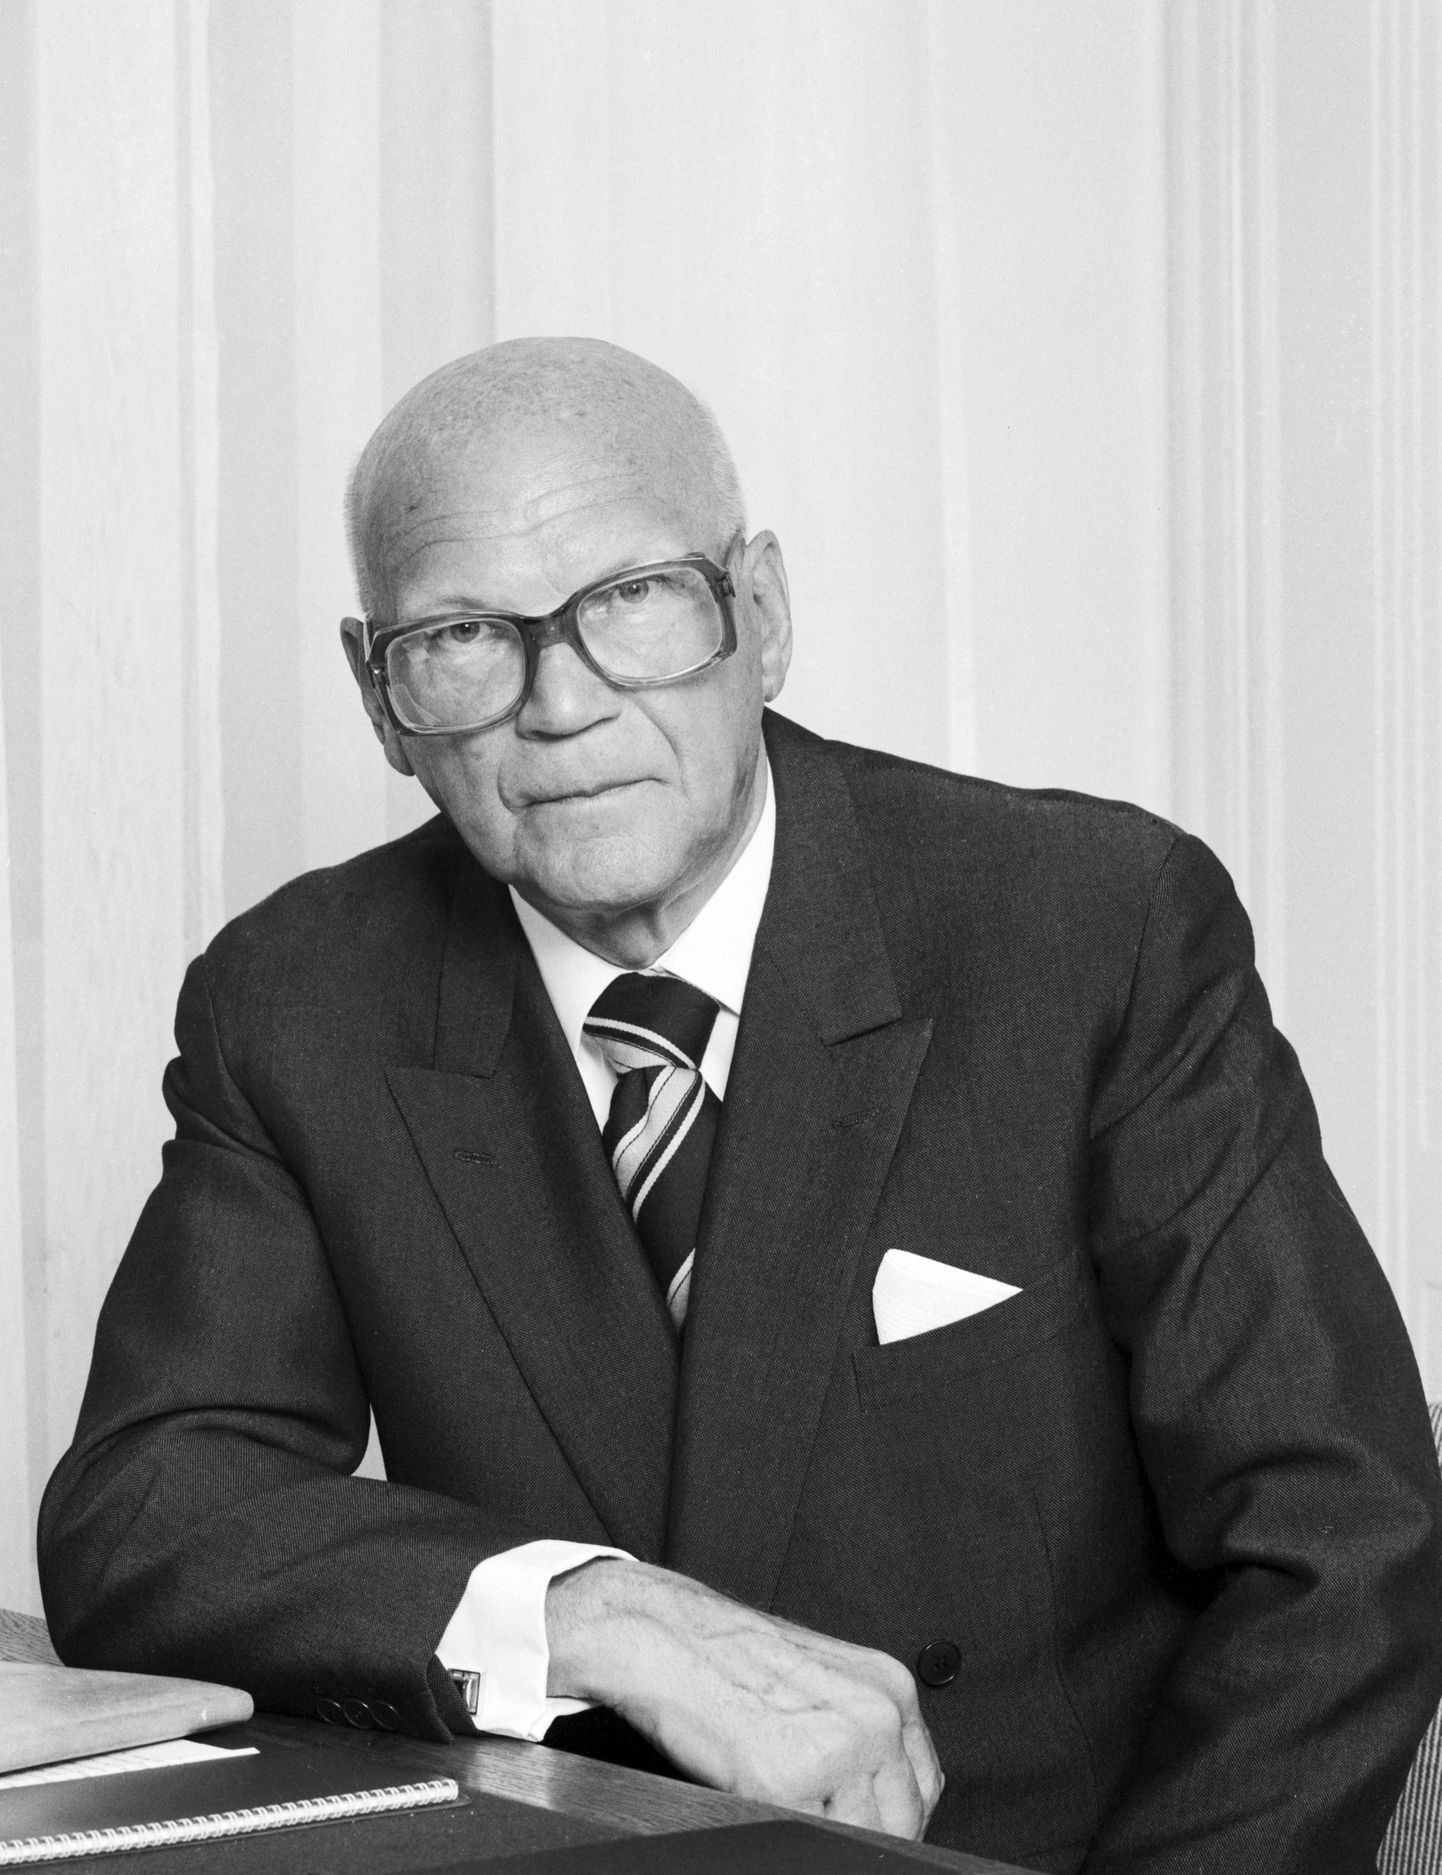 Pildil on Urho Kaleva Kekkonen, kes oli Soome Vabariigi president aastatel 1956–1982. Enne seda oli ta Soome peaminister aastatel 1950–1953 ja 1954–1956.